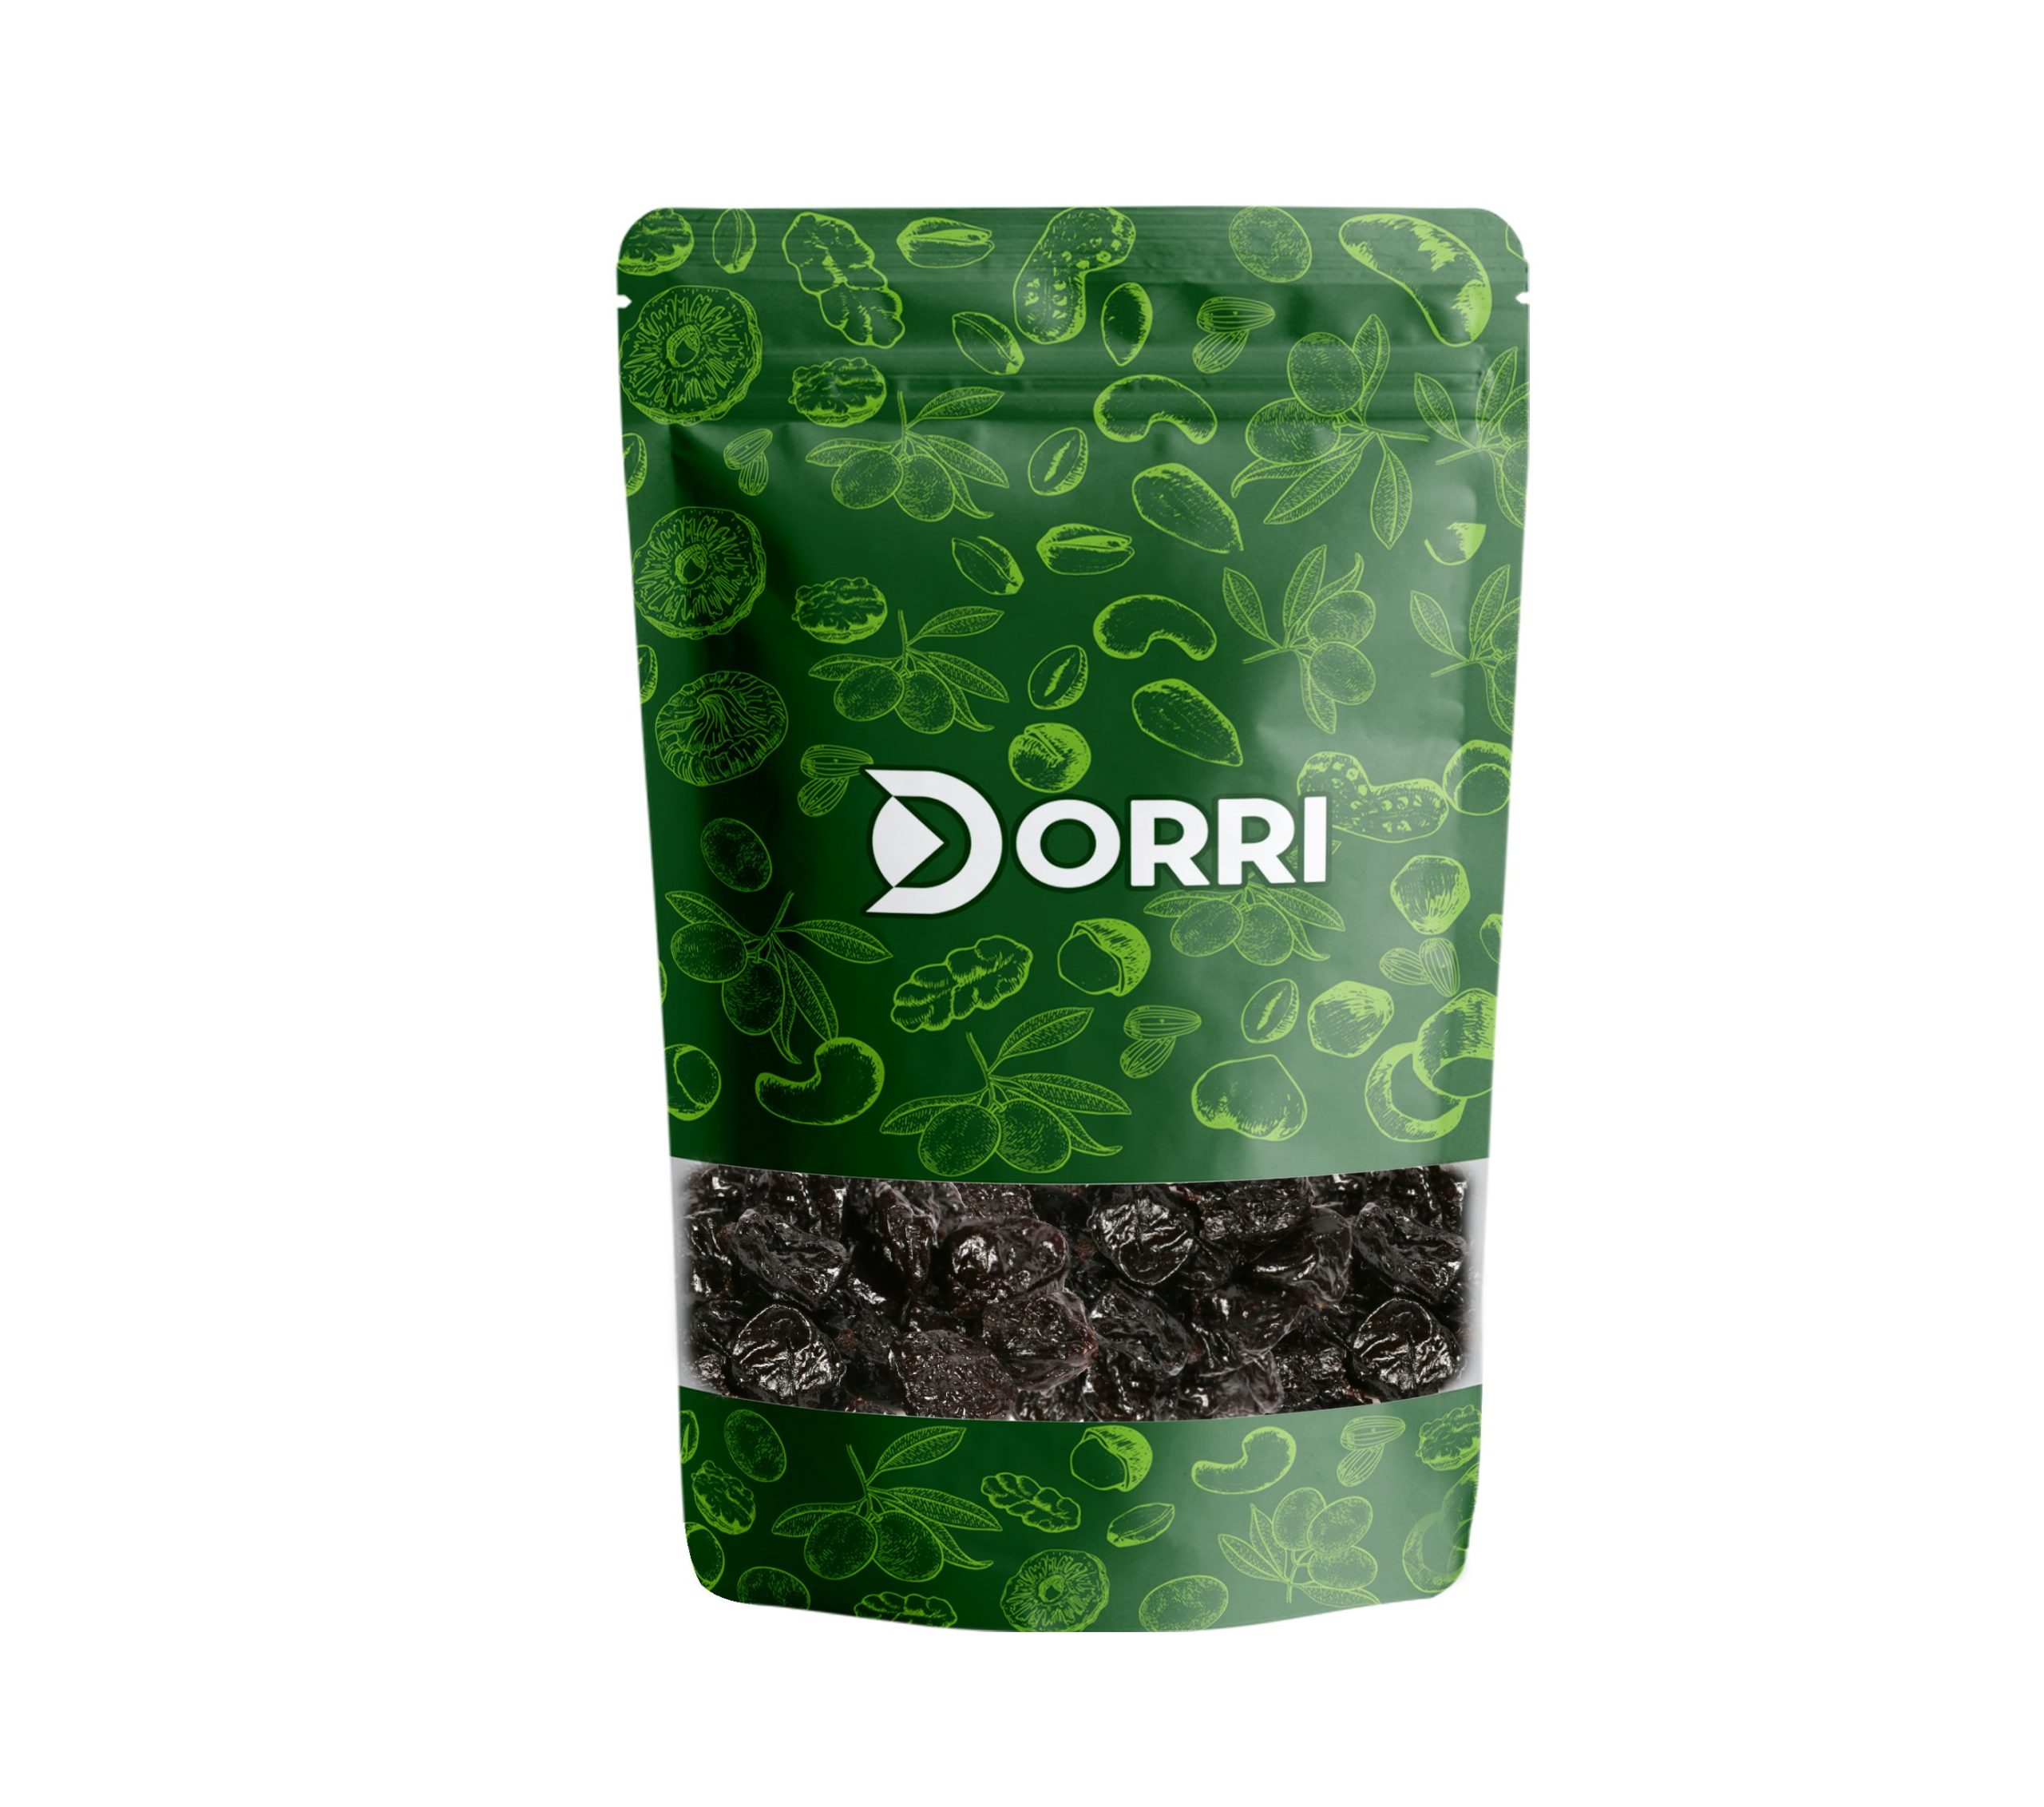 Dorri - Prunes (Pitted)